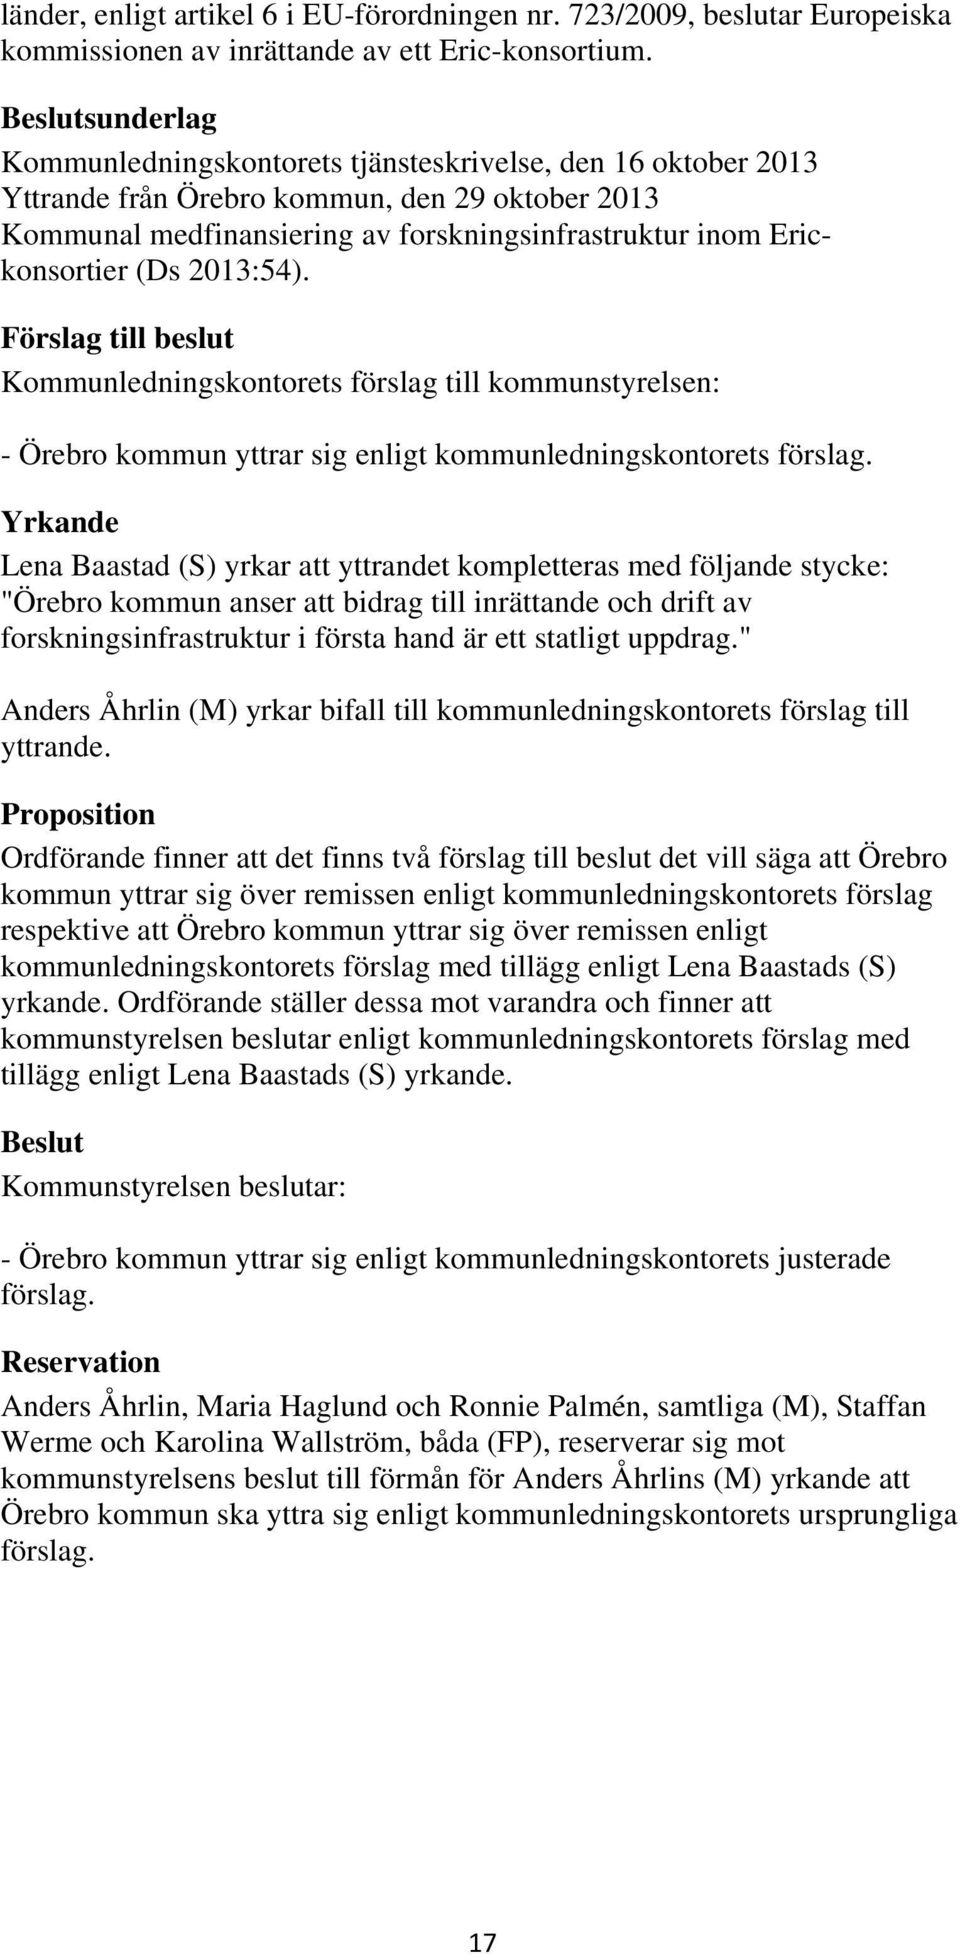 2013:54). - Örebro kommun yttrar sig enligt kommunledningskontorets förslag.